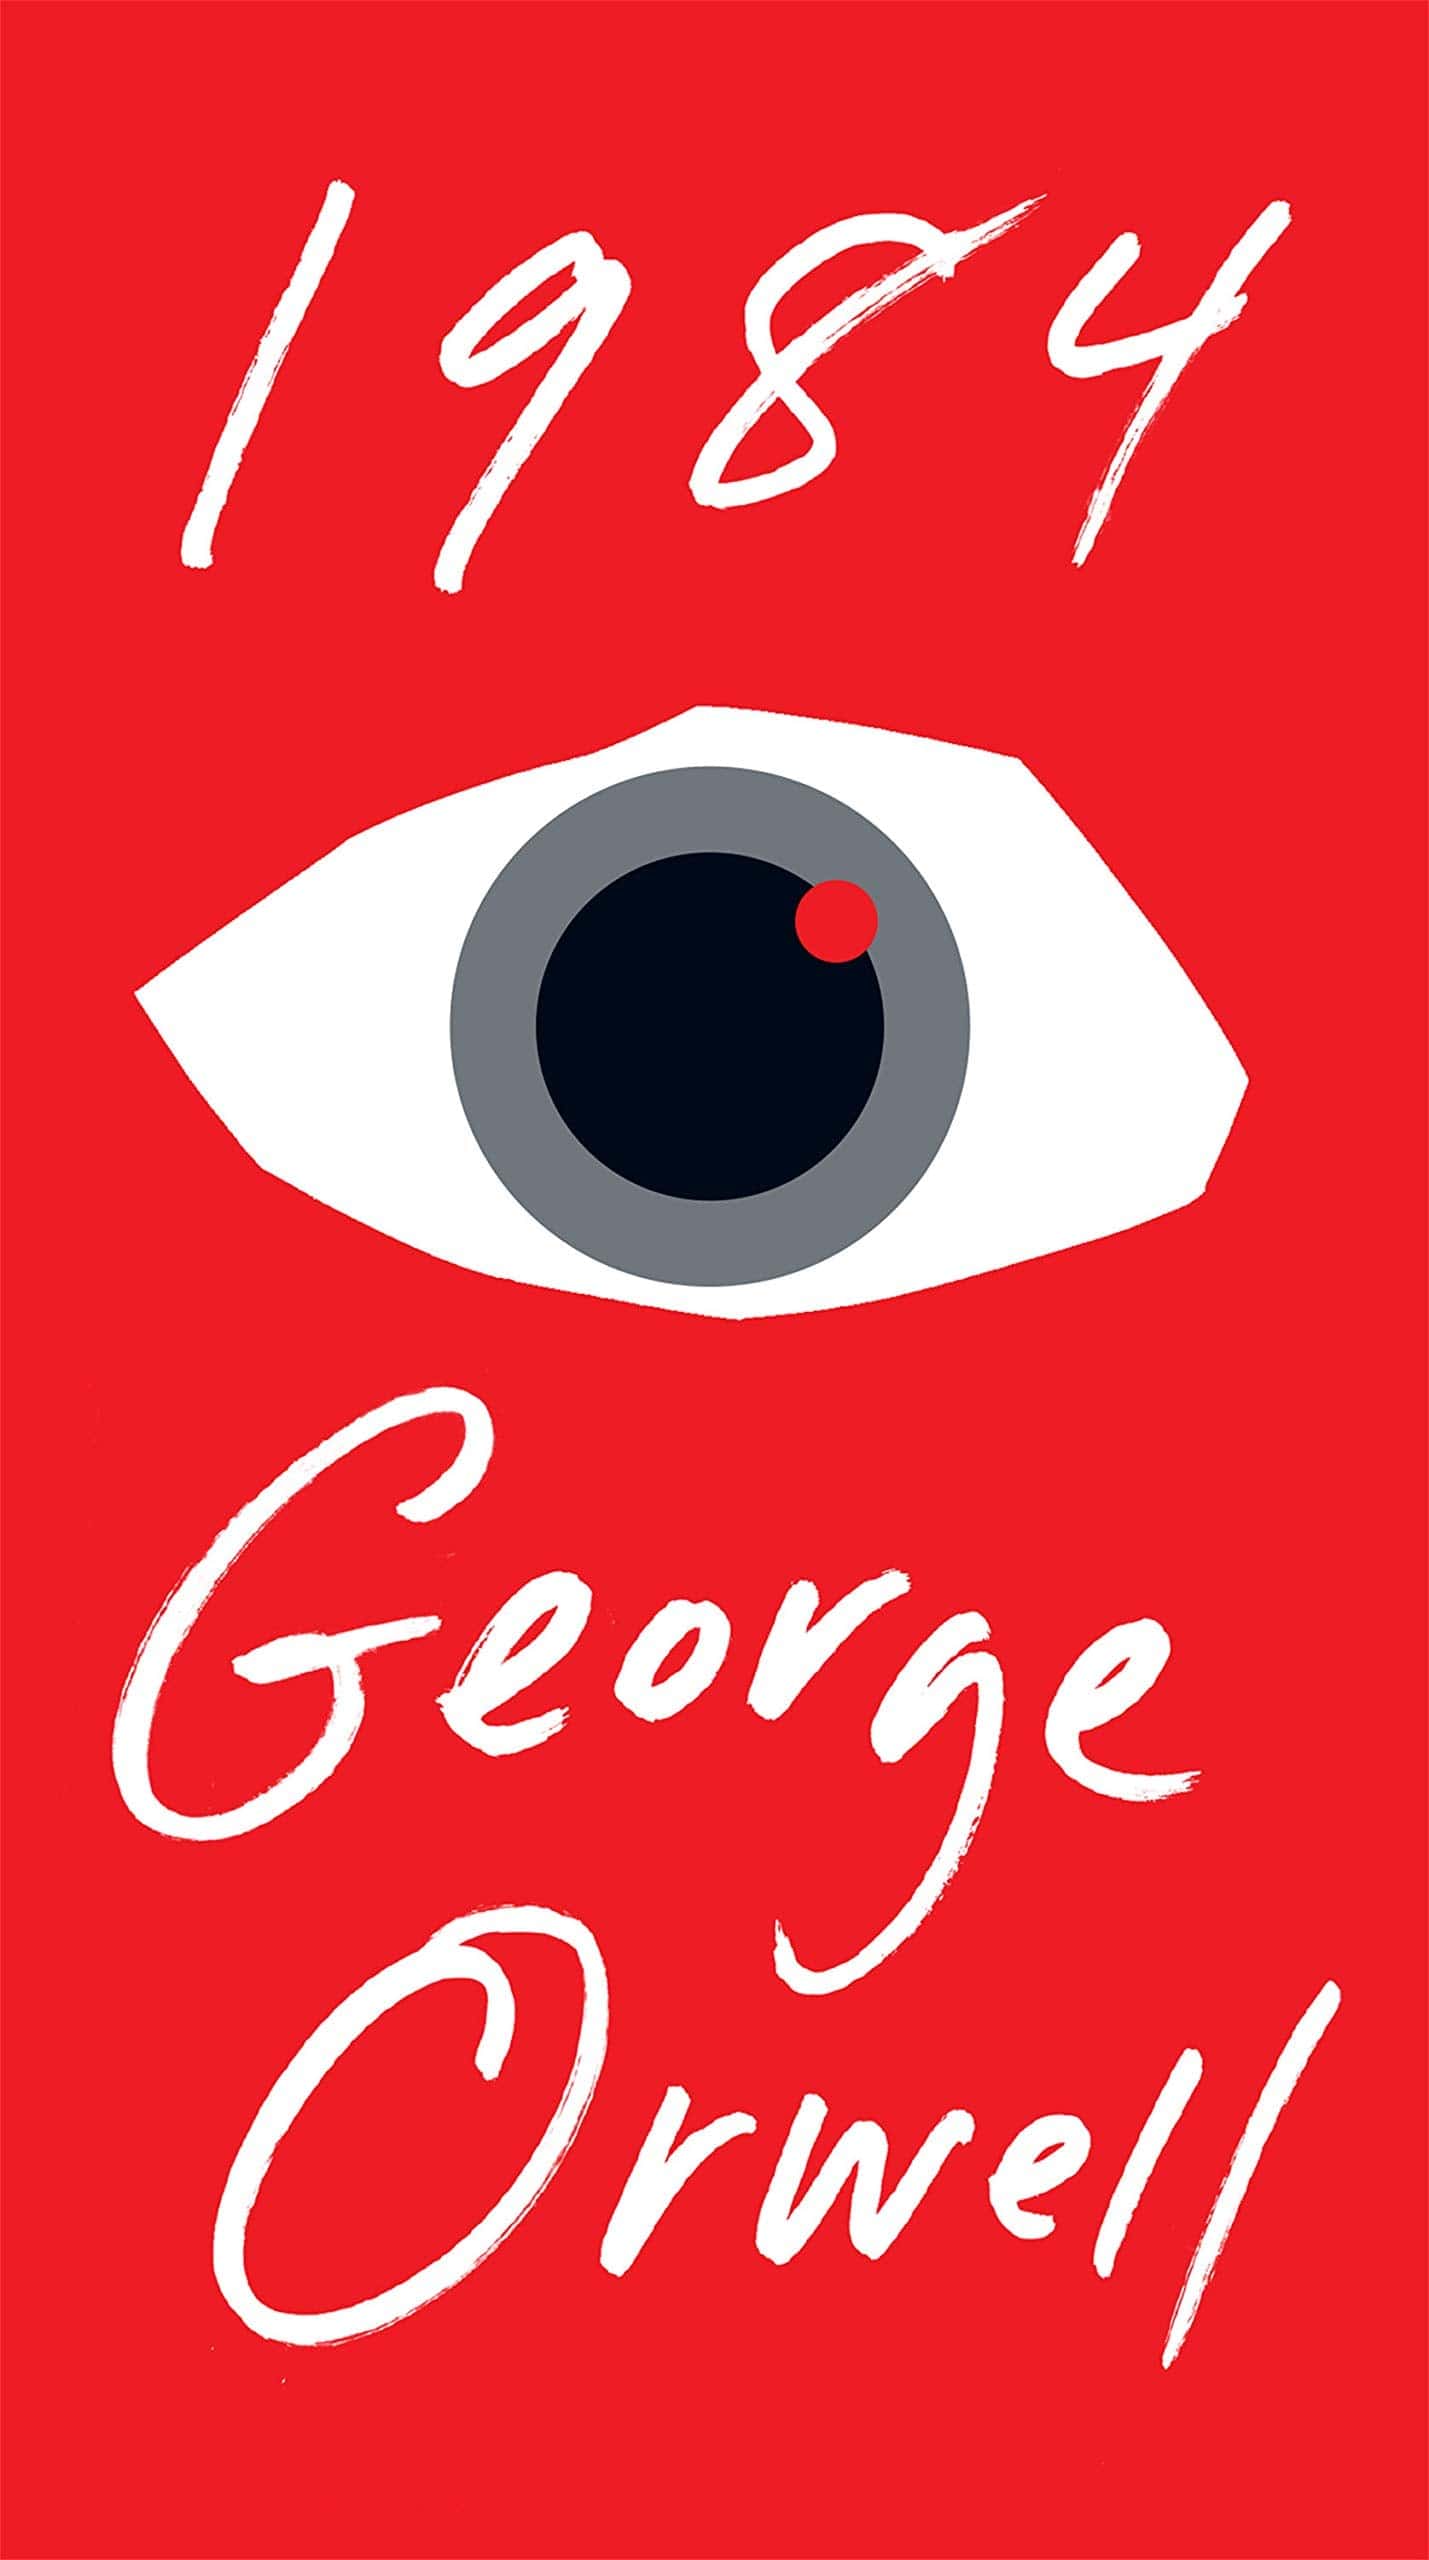 1984 by George Orwell: Unabridged Edition - Third Eye